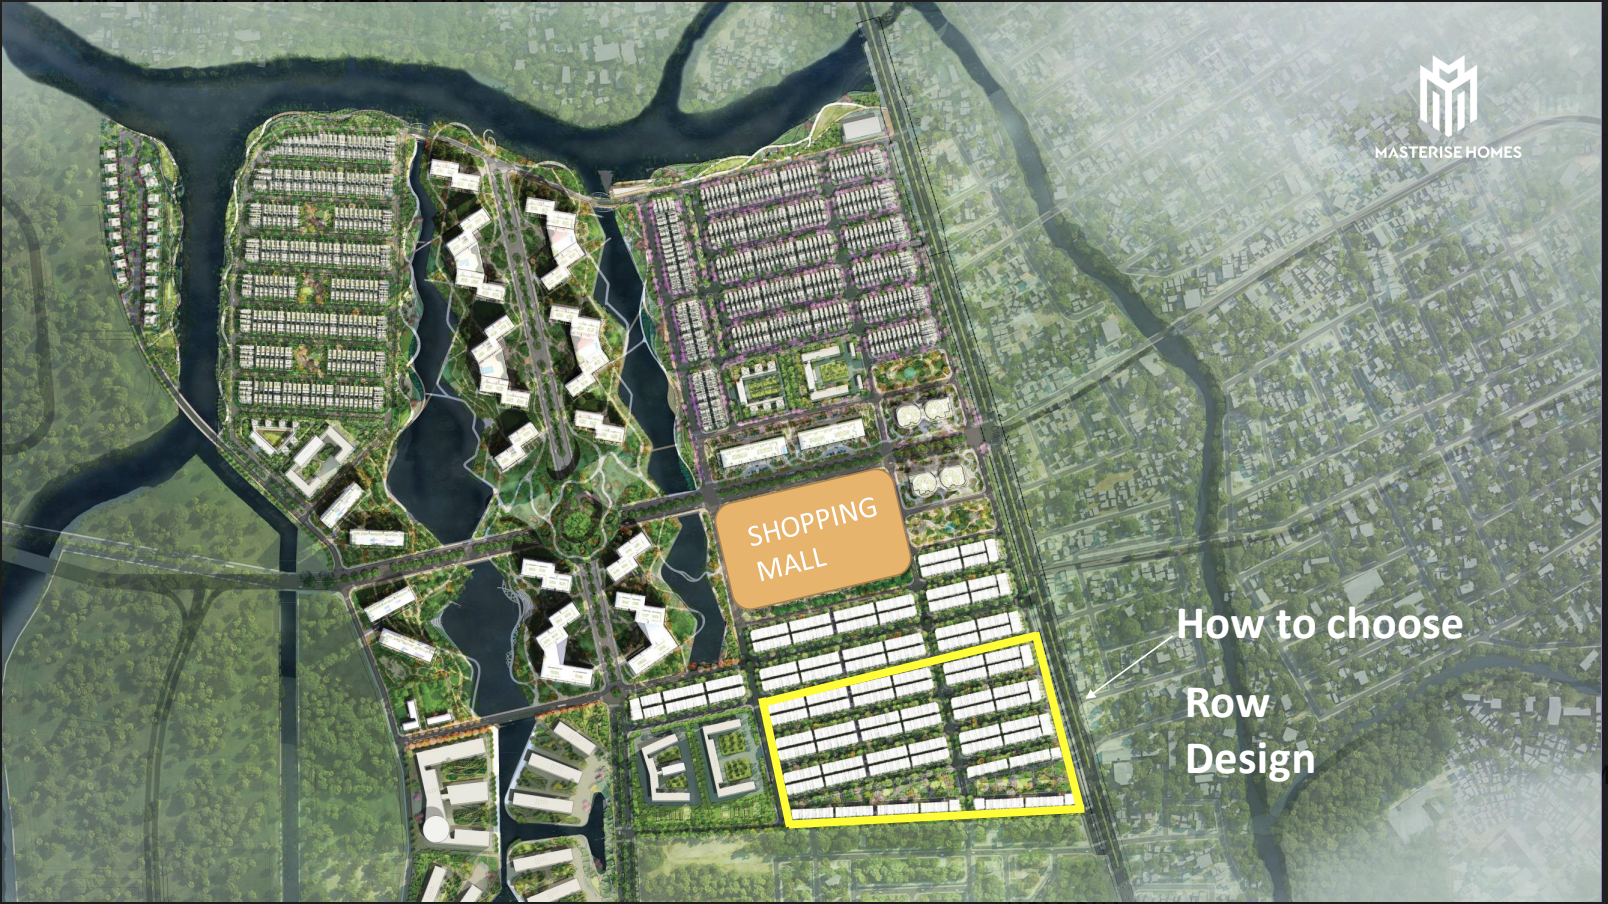 Đánh giá chi tiết dự án The Global City của Masterise Homes từ Rever!